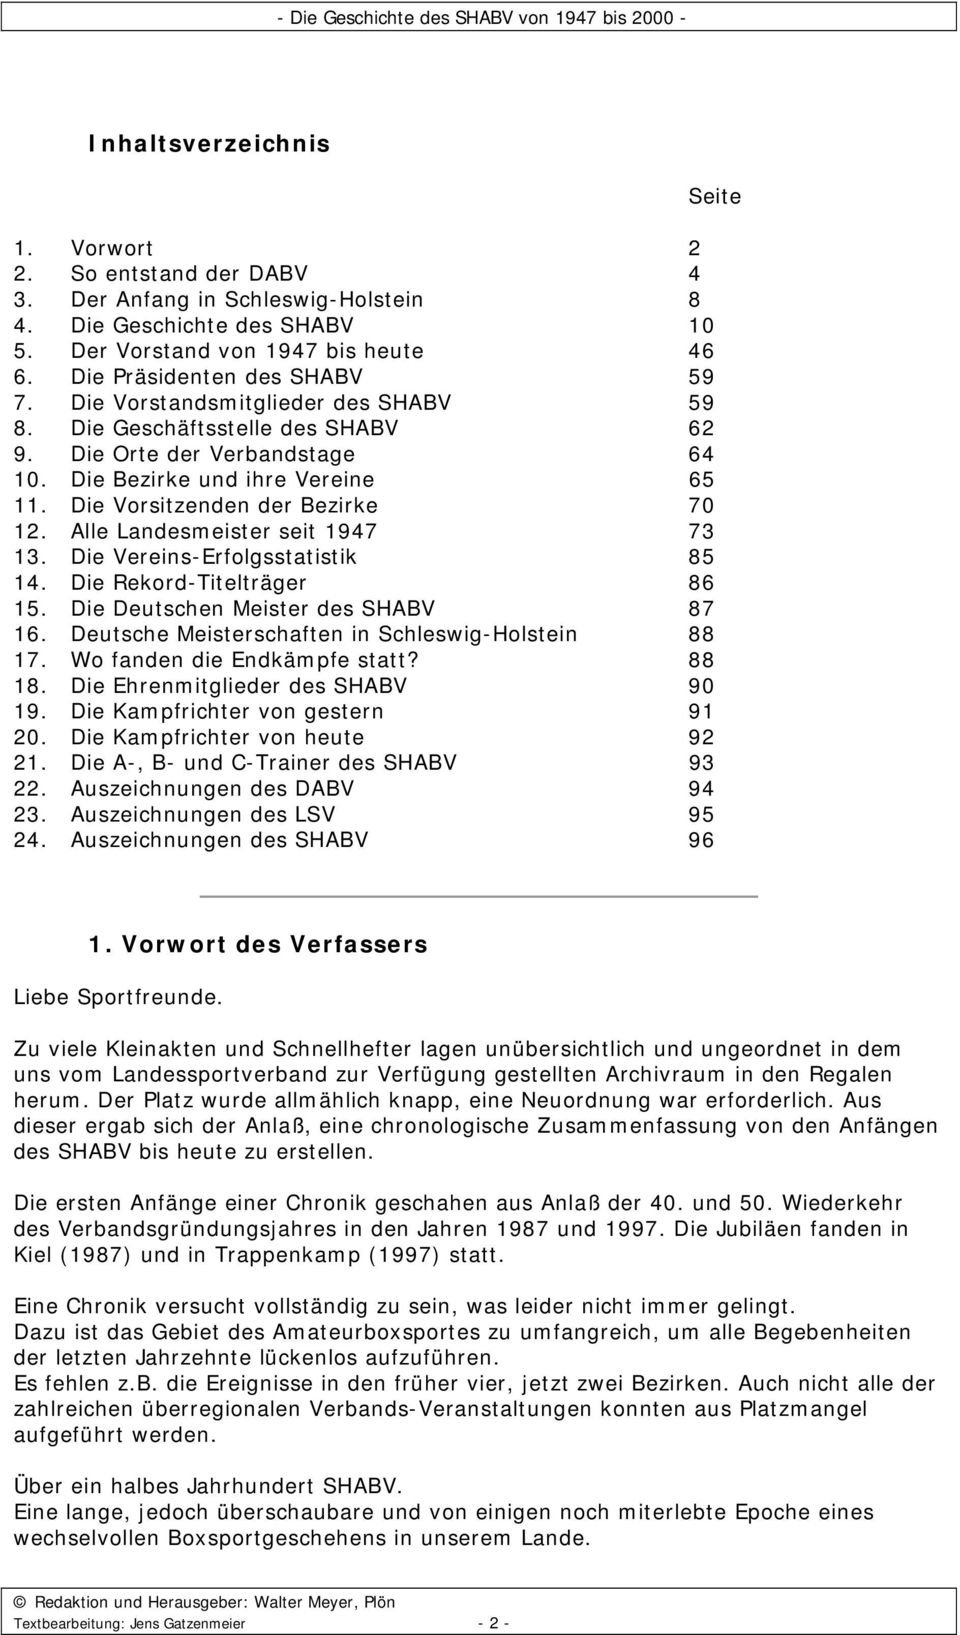 Alle Landesmeister seit 1947 73 13. Die Vereins-Erfolgsstatistik 85 14. Die Rekord-Titelträger 86 15. Die Deutschen Meister des SHABV 87 16. Deutsche Meisterschaften in Schleswig-Holstein 88 17.